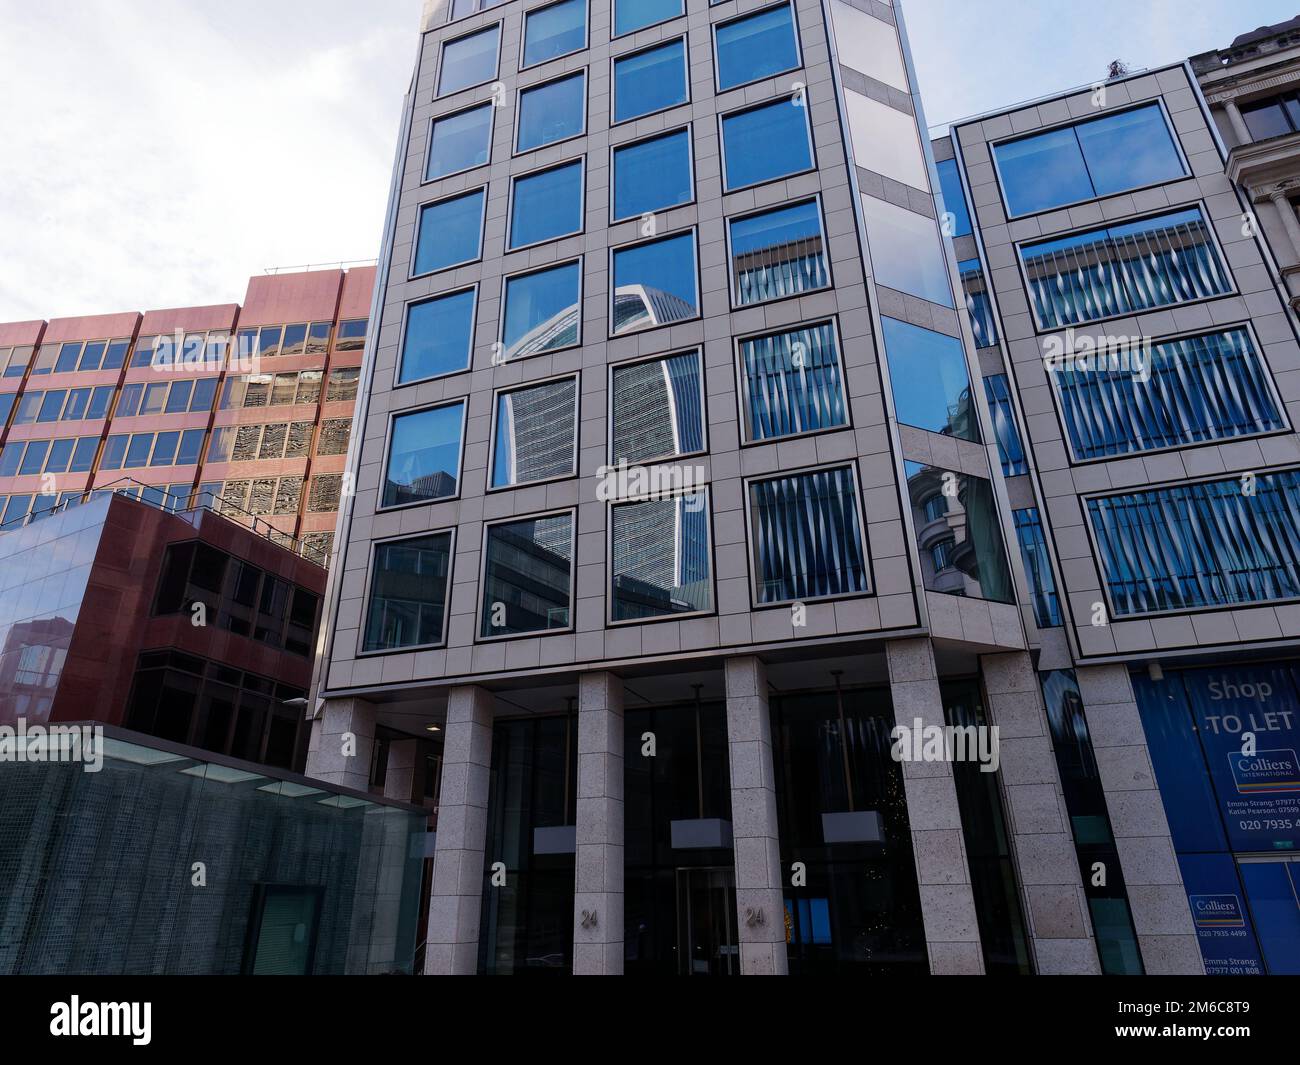 Edifici moderni nella Citta' di Londra con il Walkie Talkie Skyscraper riflesso nelle finestre. Londra, Inghilterra Foto Stock